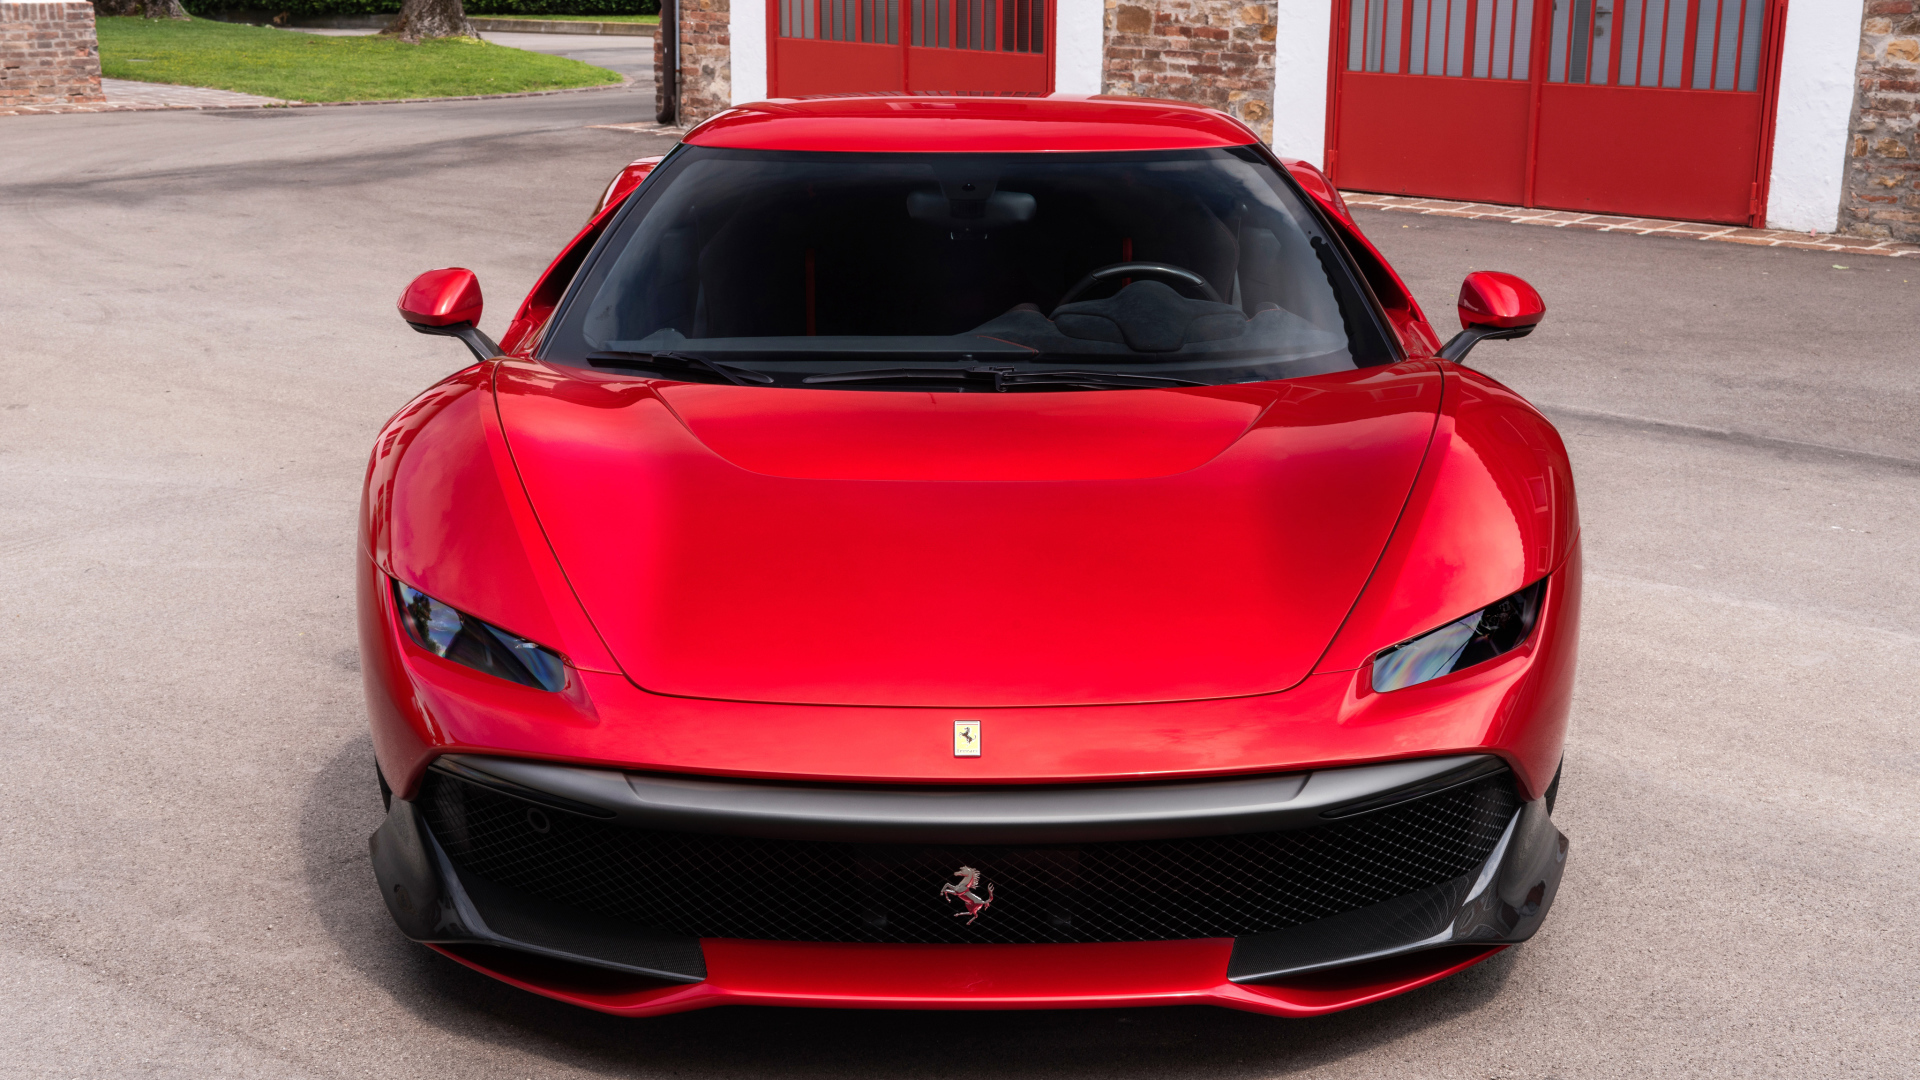 Красный стильный автомобиль Ferrari SP38, 2018 вид спереди